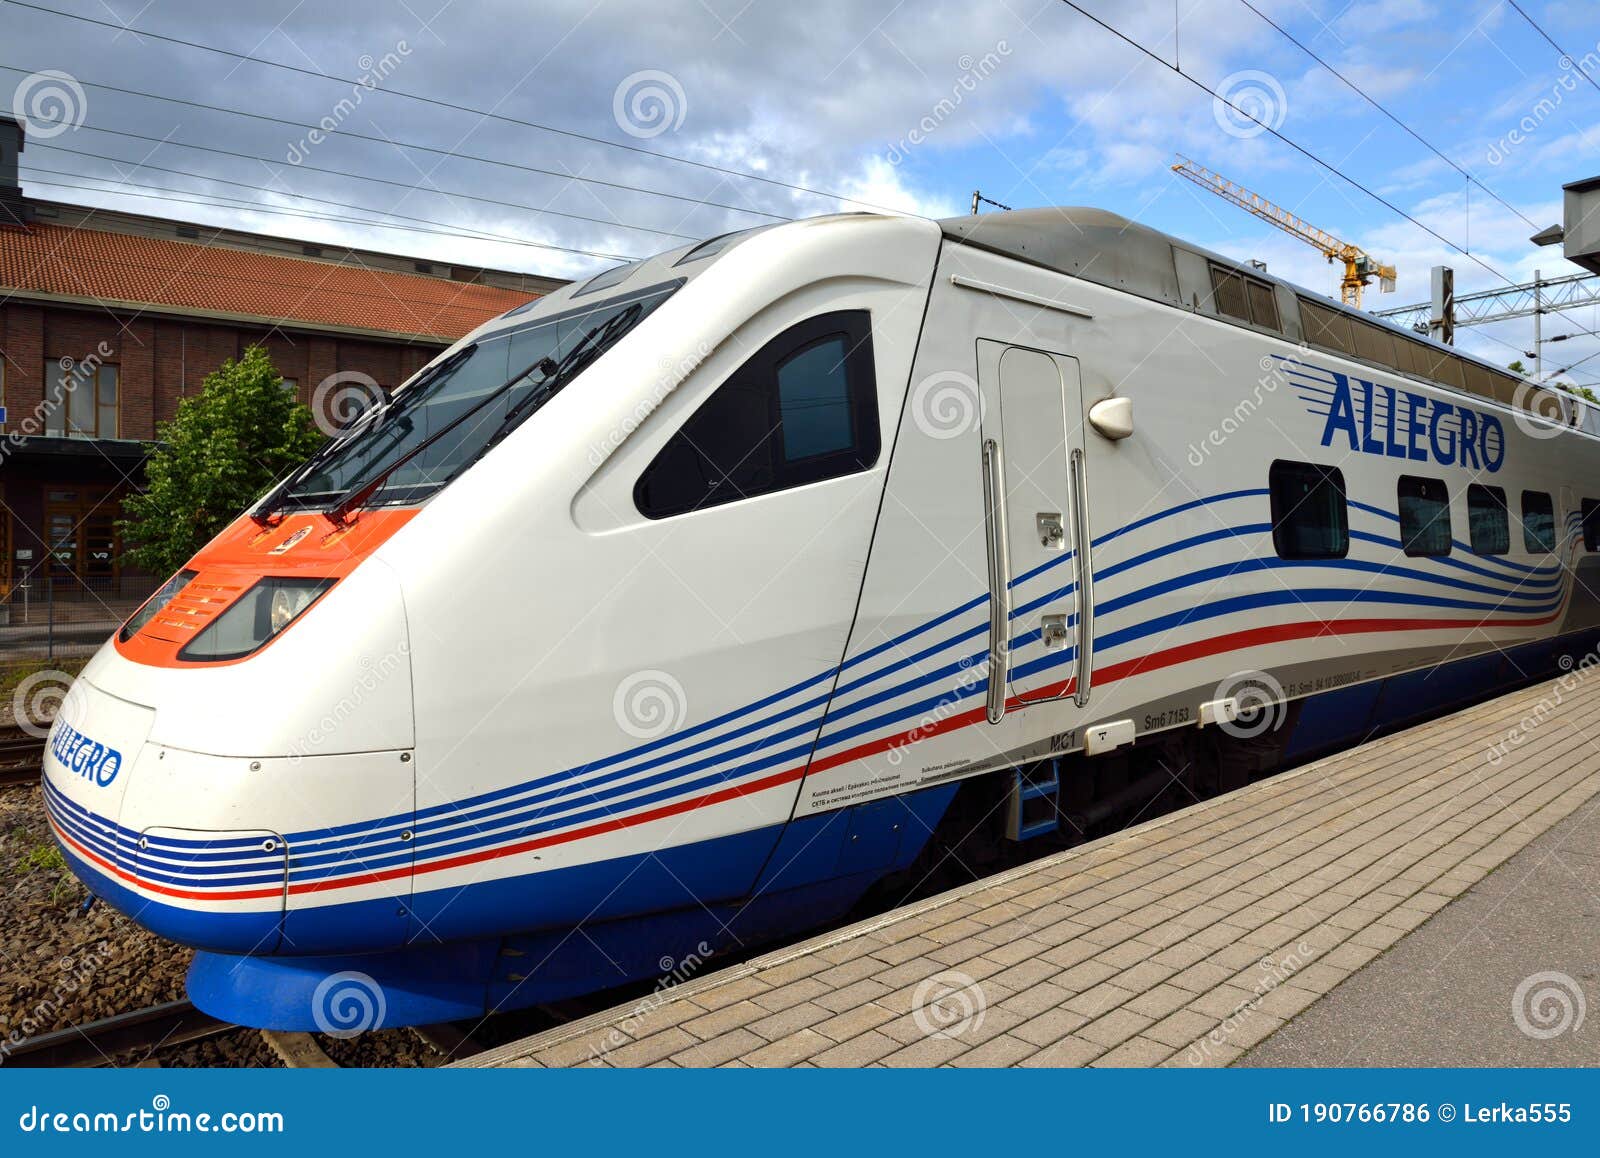 El Tren Allegro Tiene Una Velocidad Máxima De Funcionamiento De 220 Kph. Los Trenes Son Propiedad De Trenes Karelianos, Que Es Foto editorial Imagen de velocidad, pista: 190766786